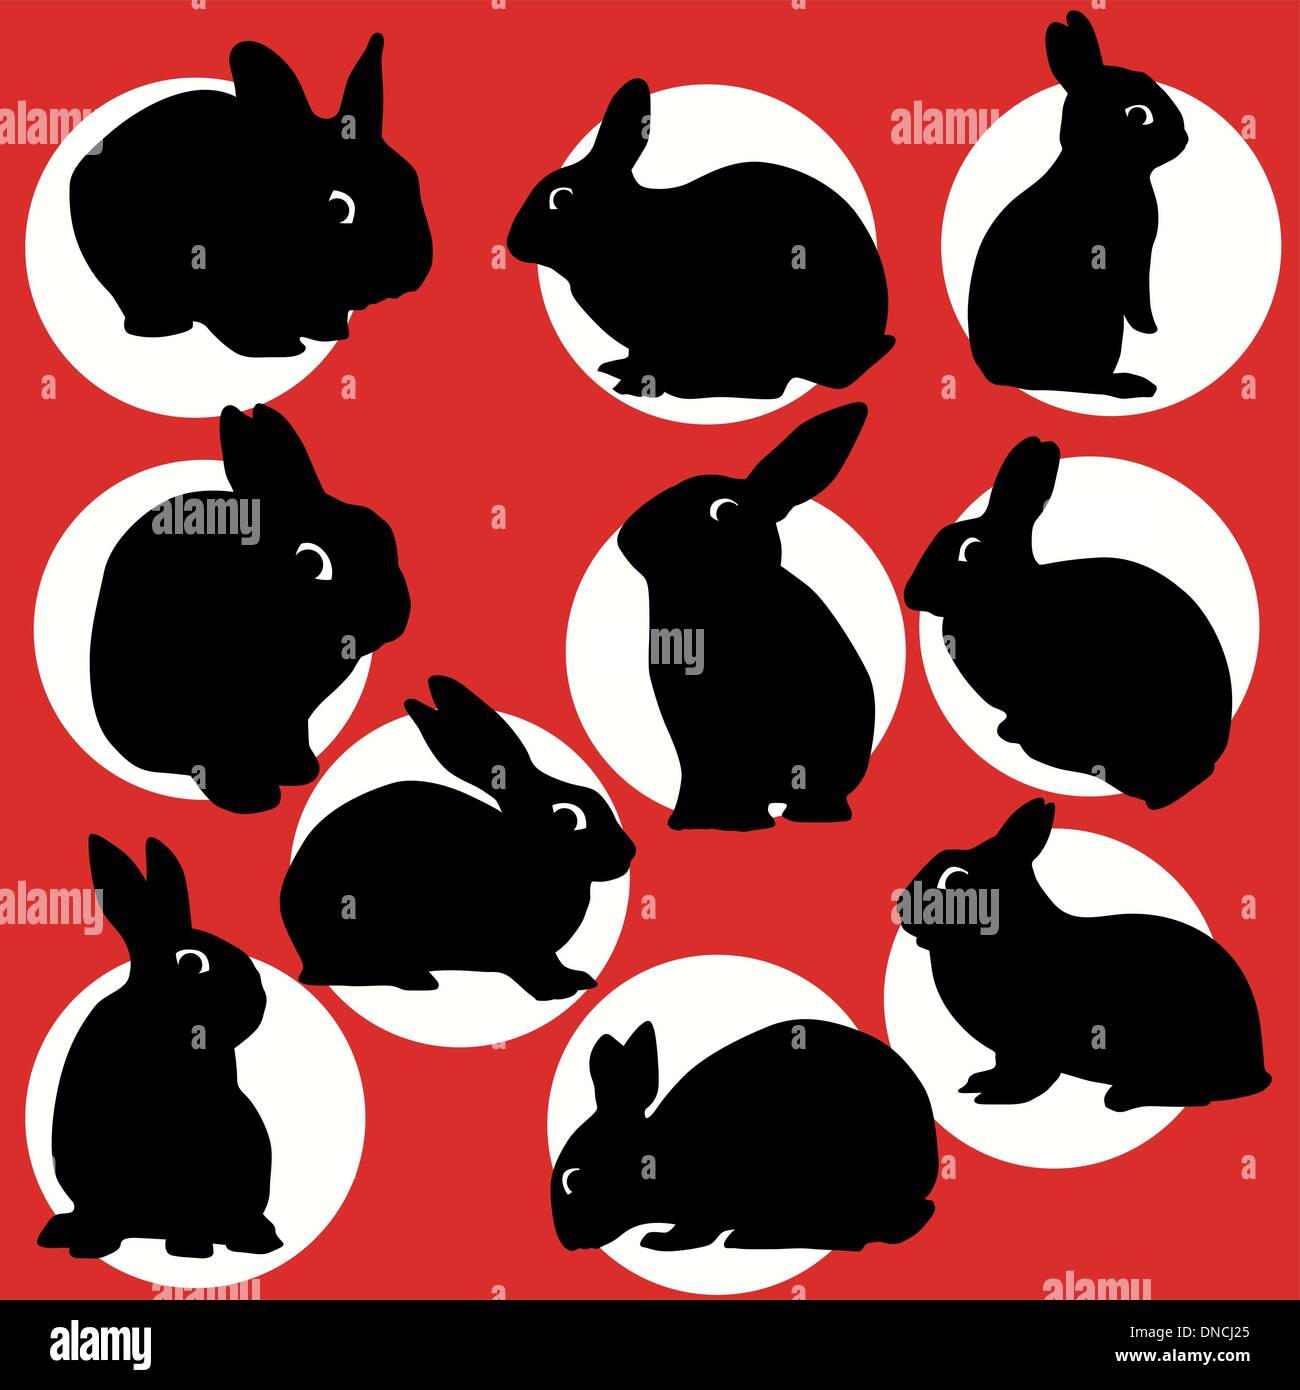 Jeu de silhouettes de lapins Illustration de Vecteur